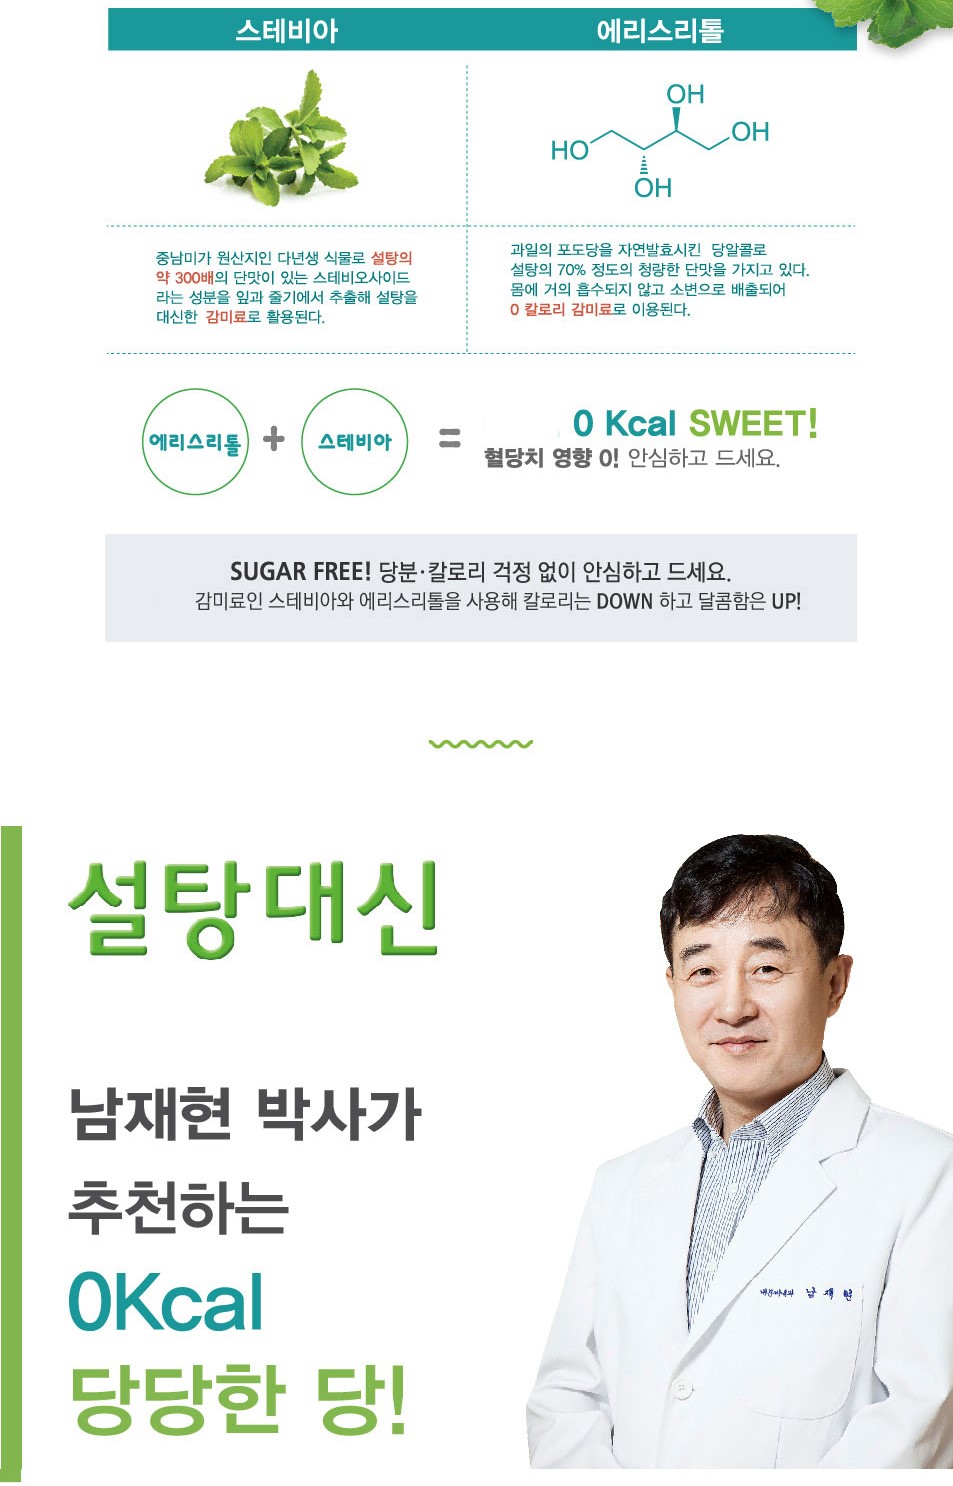 韓國食品-[바이오믹스] 설탕대신 스테비아 400g